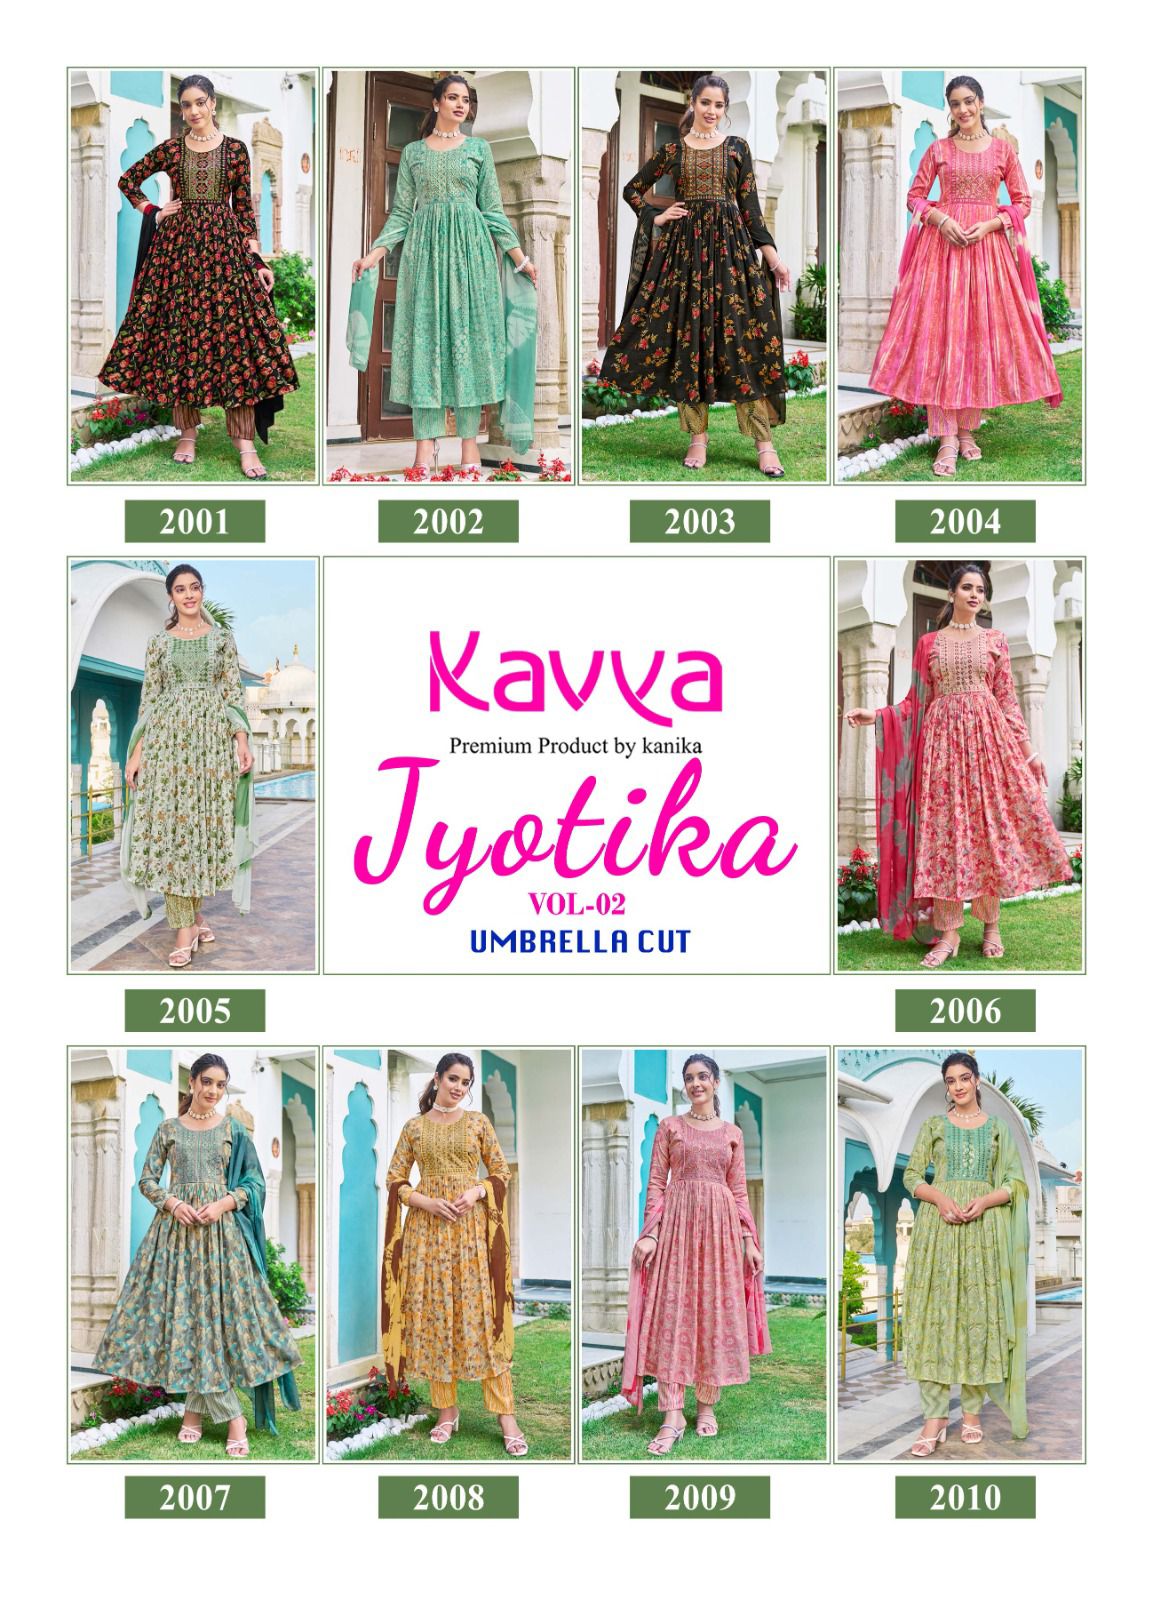 Kavya Jyotika Vol-2